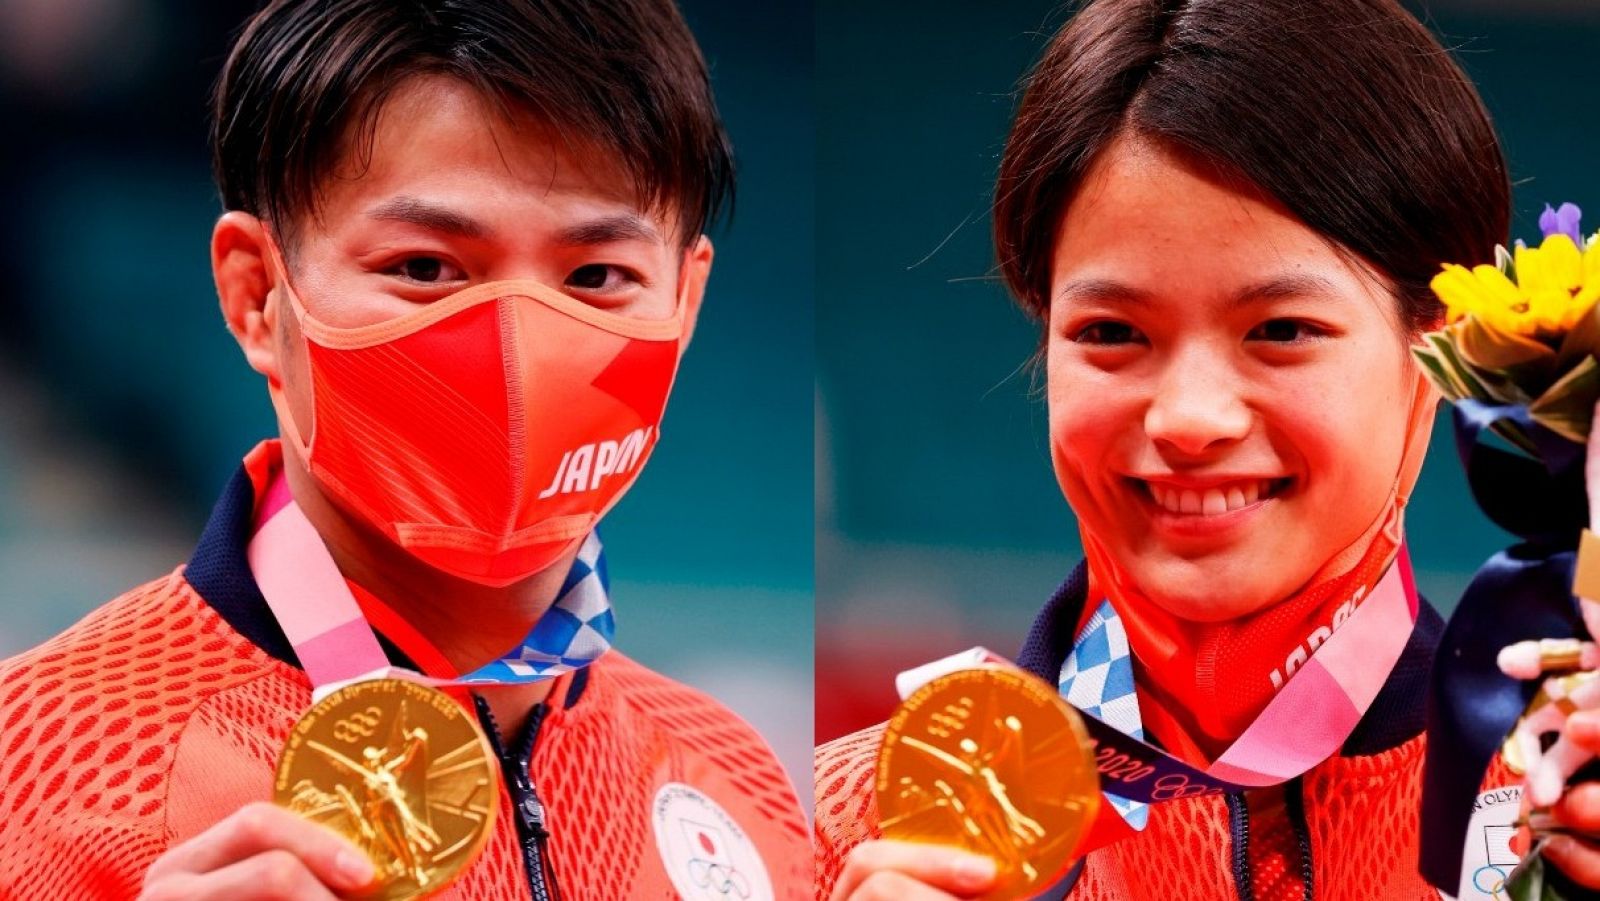 Los hermanos Abe se proclaman campeones olímpicos de judo en Tokyo 2020 el mismo día.